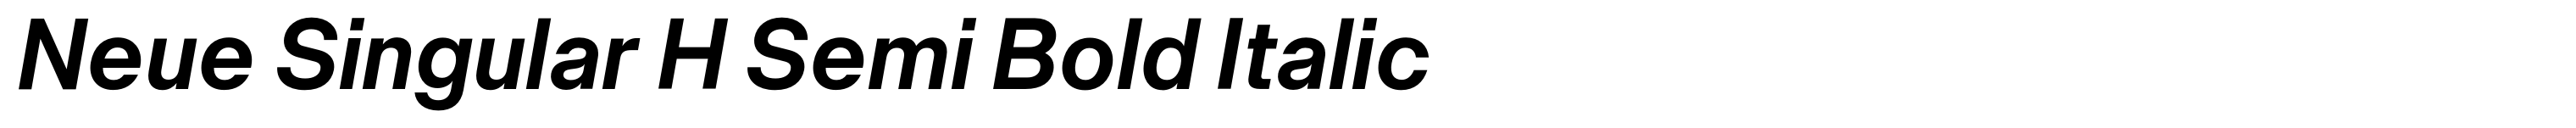 Neue Singular H Semi Bold Italic